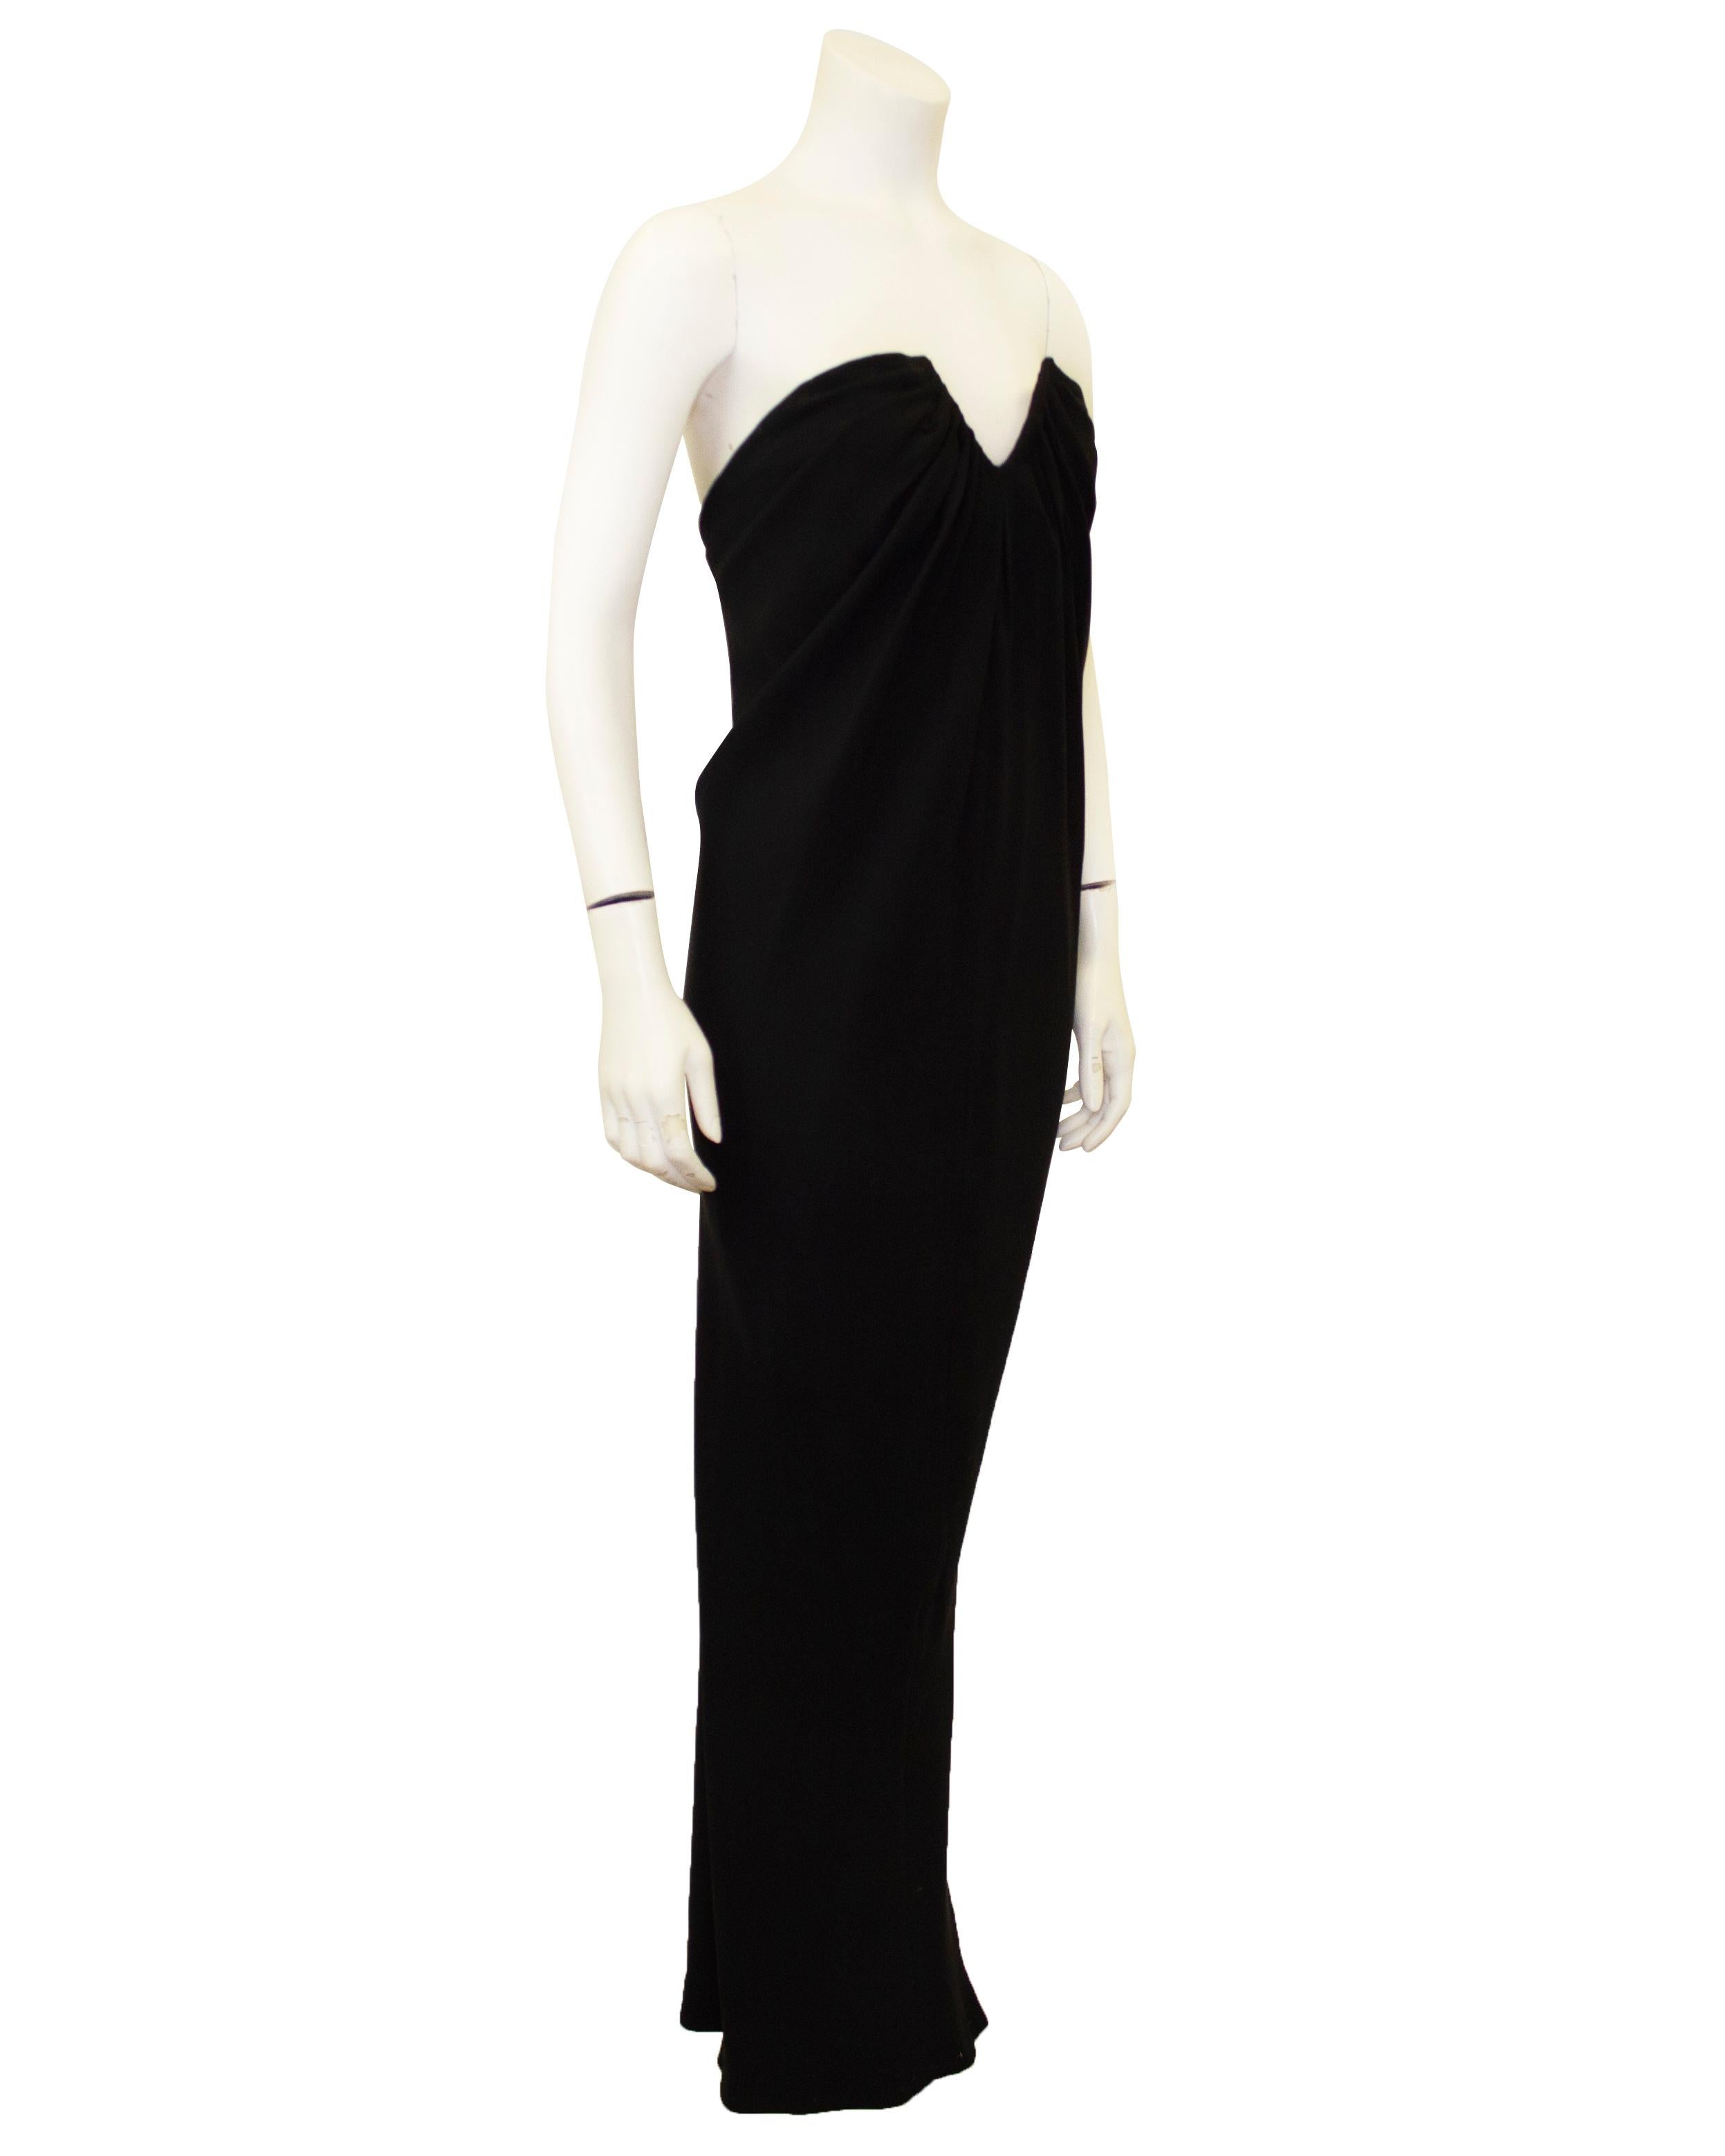 Robe en soie noire de Carolyne Roehm des années 1980, élégante et sexy. Bustier avec découpe en forme de U au niveau du buste. Le tissu s'enroule autour de la découpe et crée un drapé vers l'extérieur. La jupe épouse le corps et se rétrécit dans le